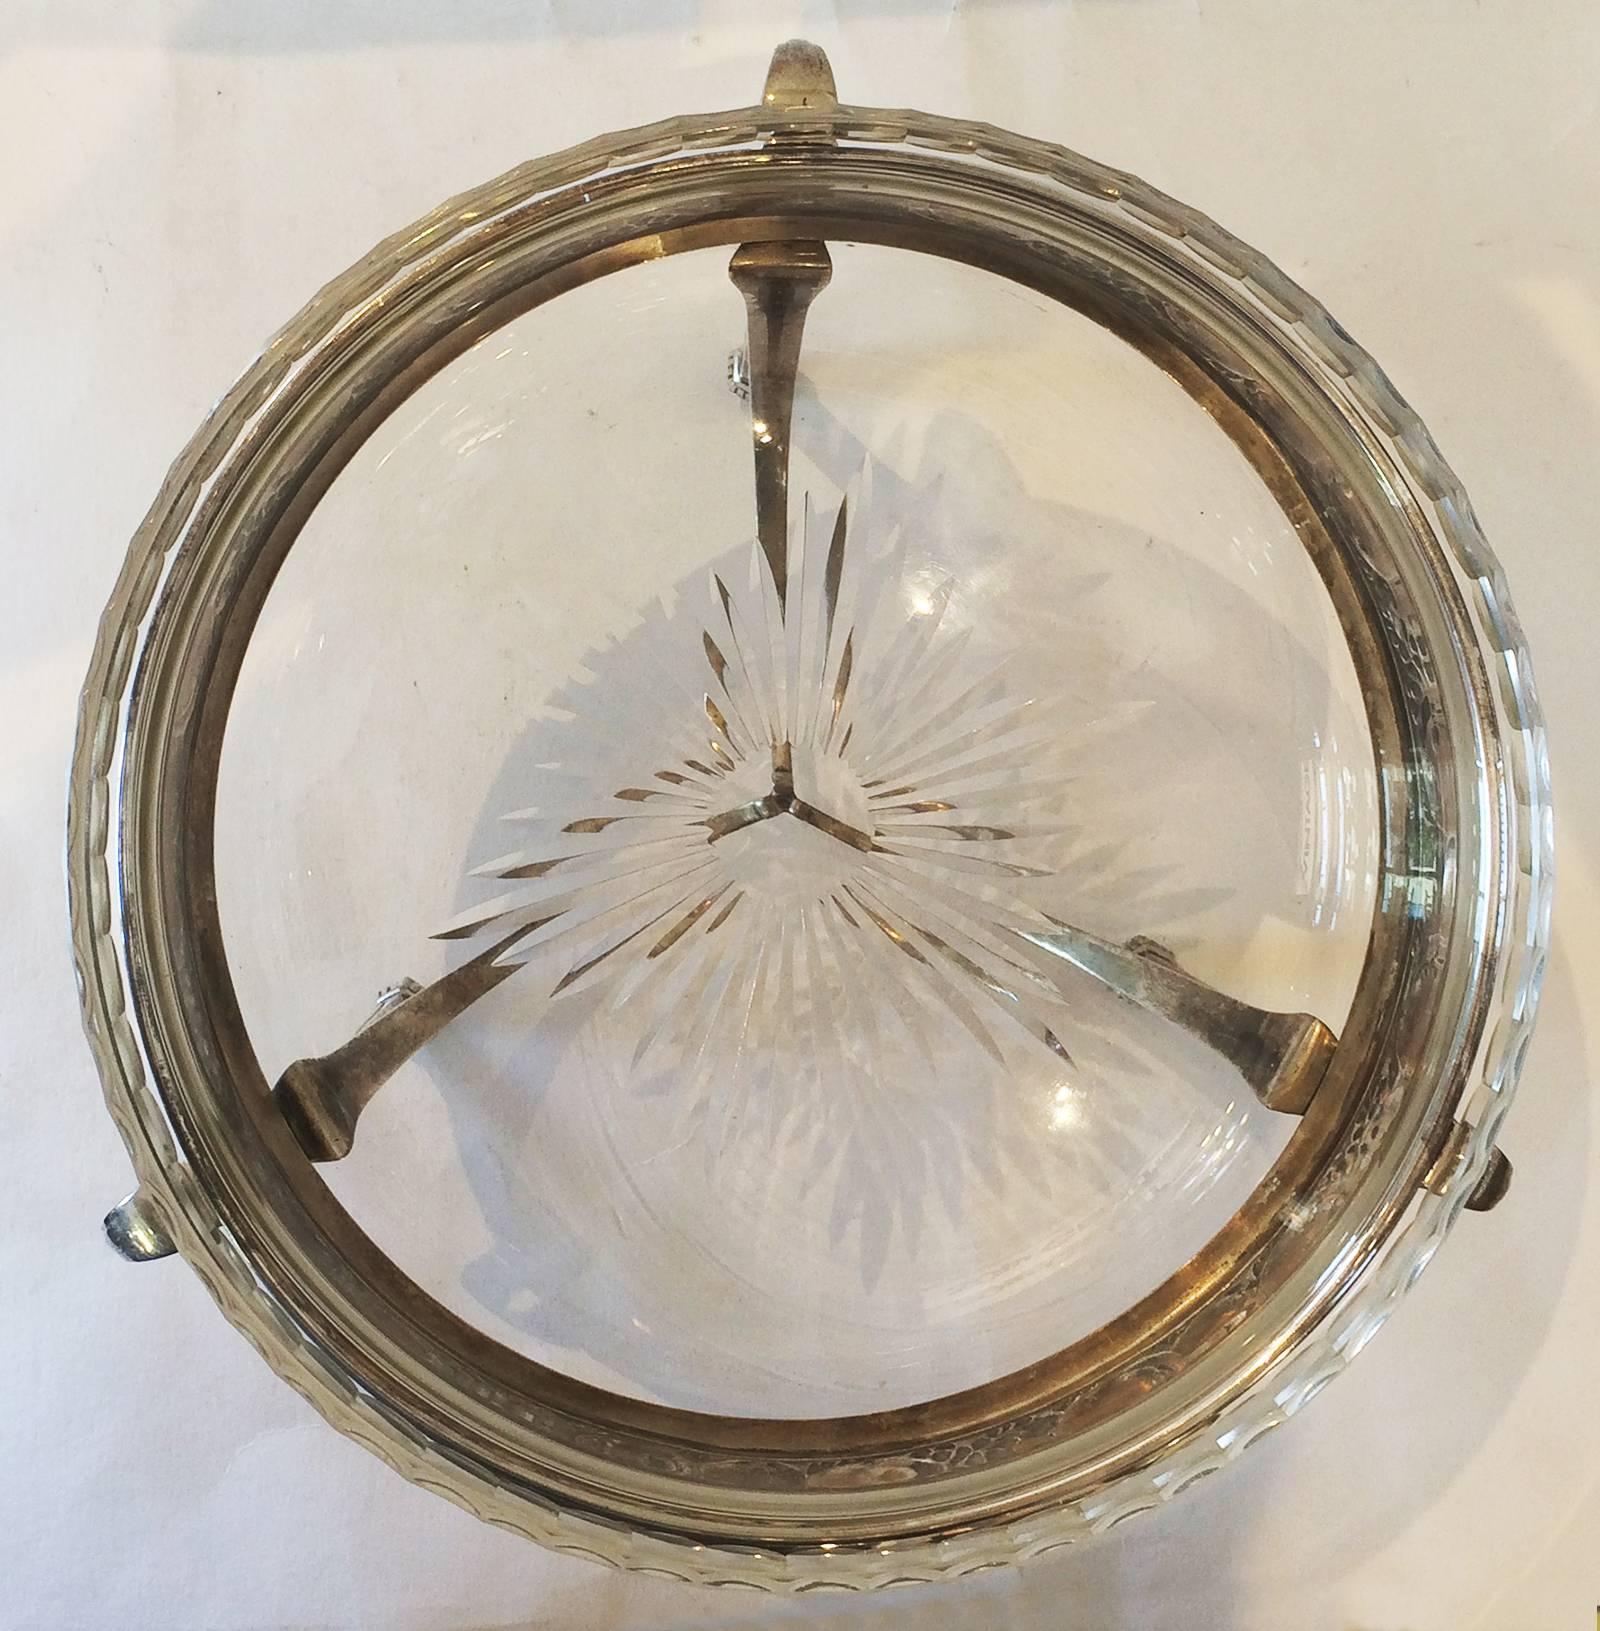 Silver Plate Art Nouveau WMF Table Centerpiece Fruit Bowl with Original Glass Liner